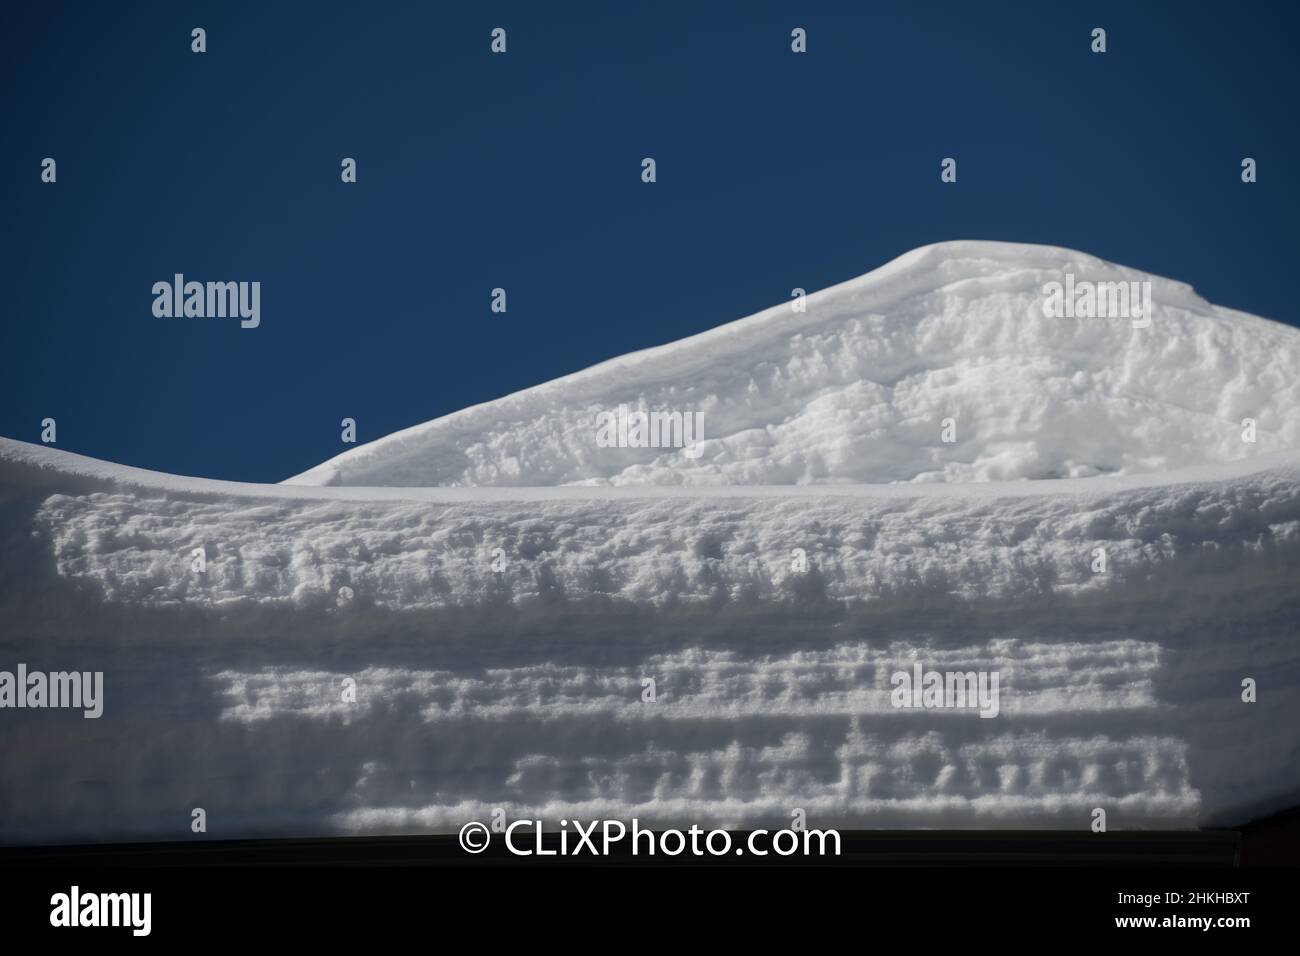 couches de neige sur le toit charge de neige sur le toit extérieur de la maison ou le chalet de ski accumulation de neige dans le ciel bleu d'hiver en fond d'hiver format horizontal Banque D'Images